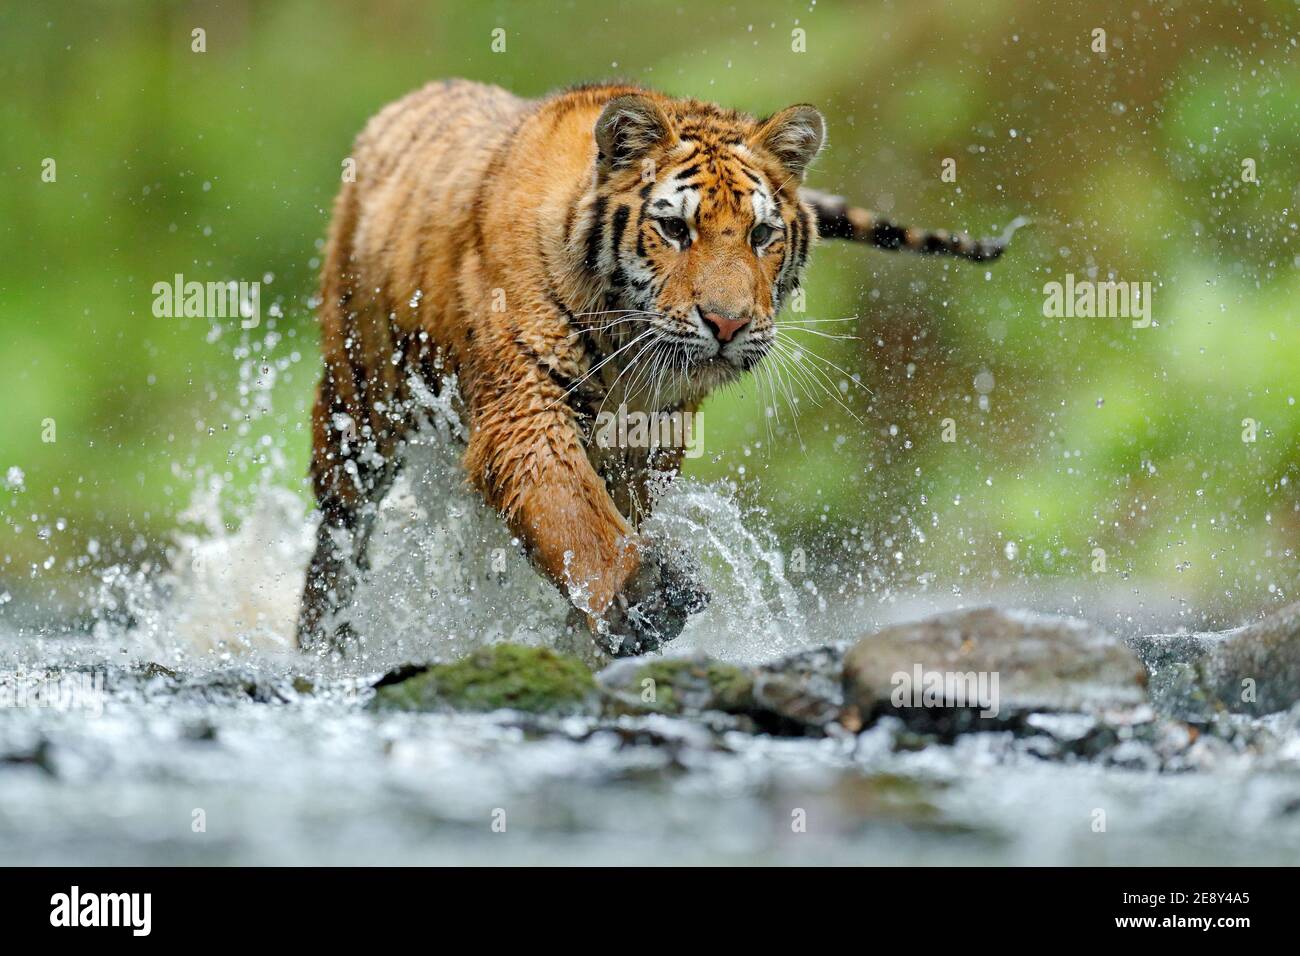 Tiger, Tierwelt Asien. Sibirischer Tiger läuft im Wasser, Sibirien. Gefährliches Tier, Taiga, Russland. Tier im grünen Waldbach. Amur Tiger Splashi Stockfoto